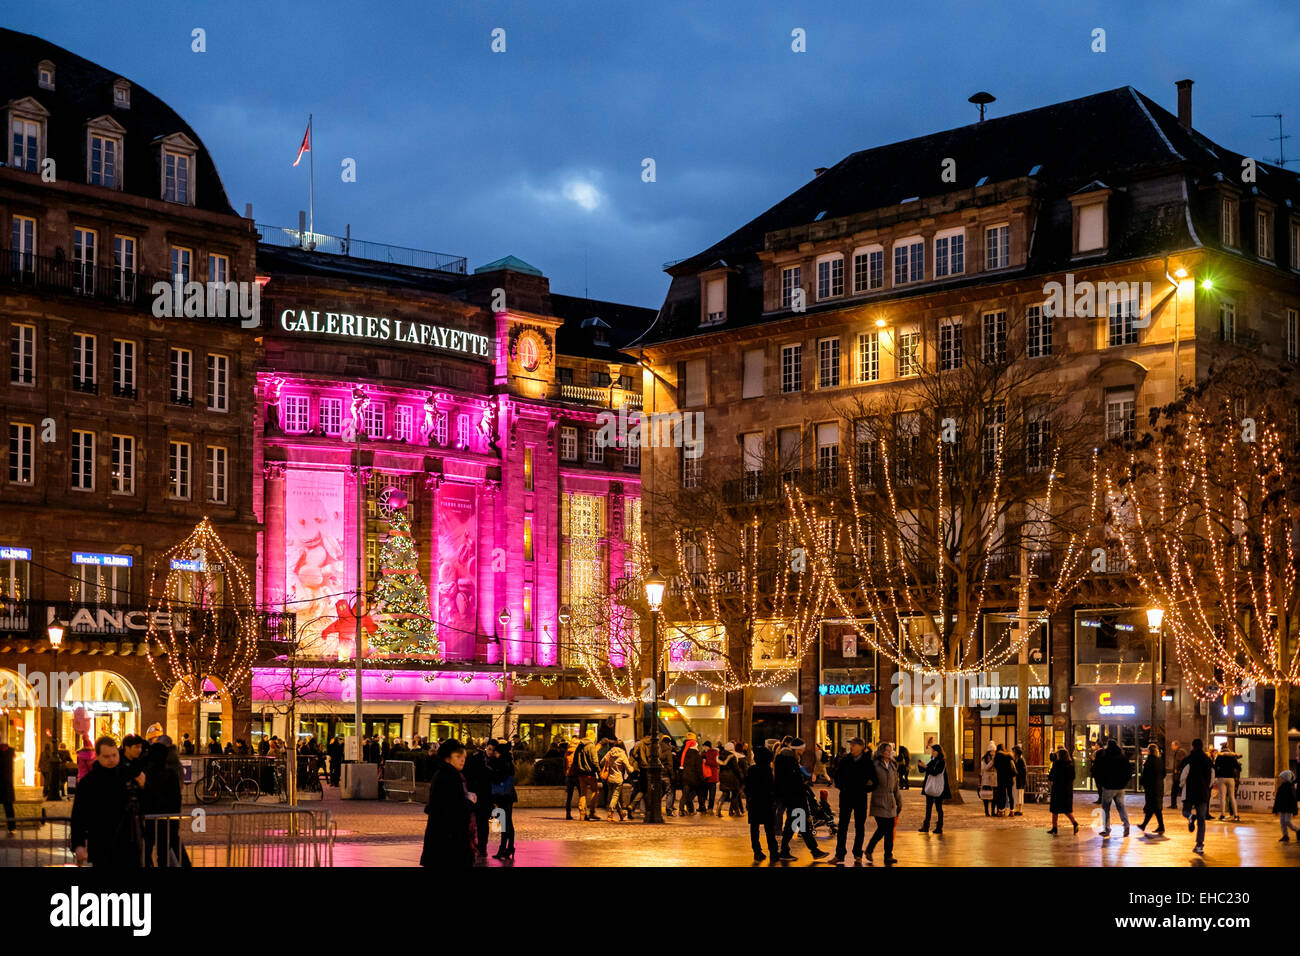 Place place Kléber et allumé les Galeries Lafayette à l'époque de Noël Strasbourg Alsace France Europe Banque D'Images